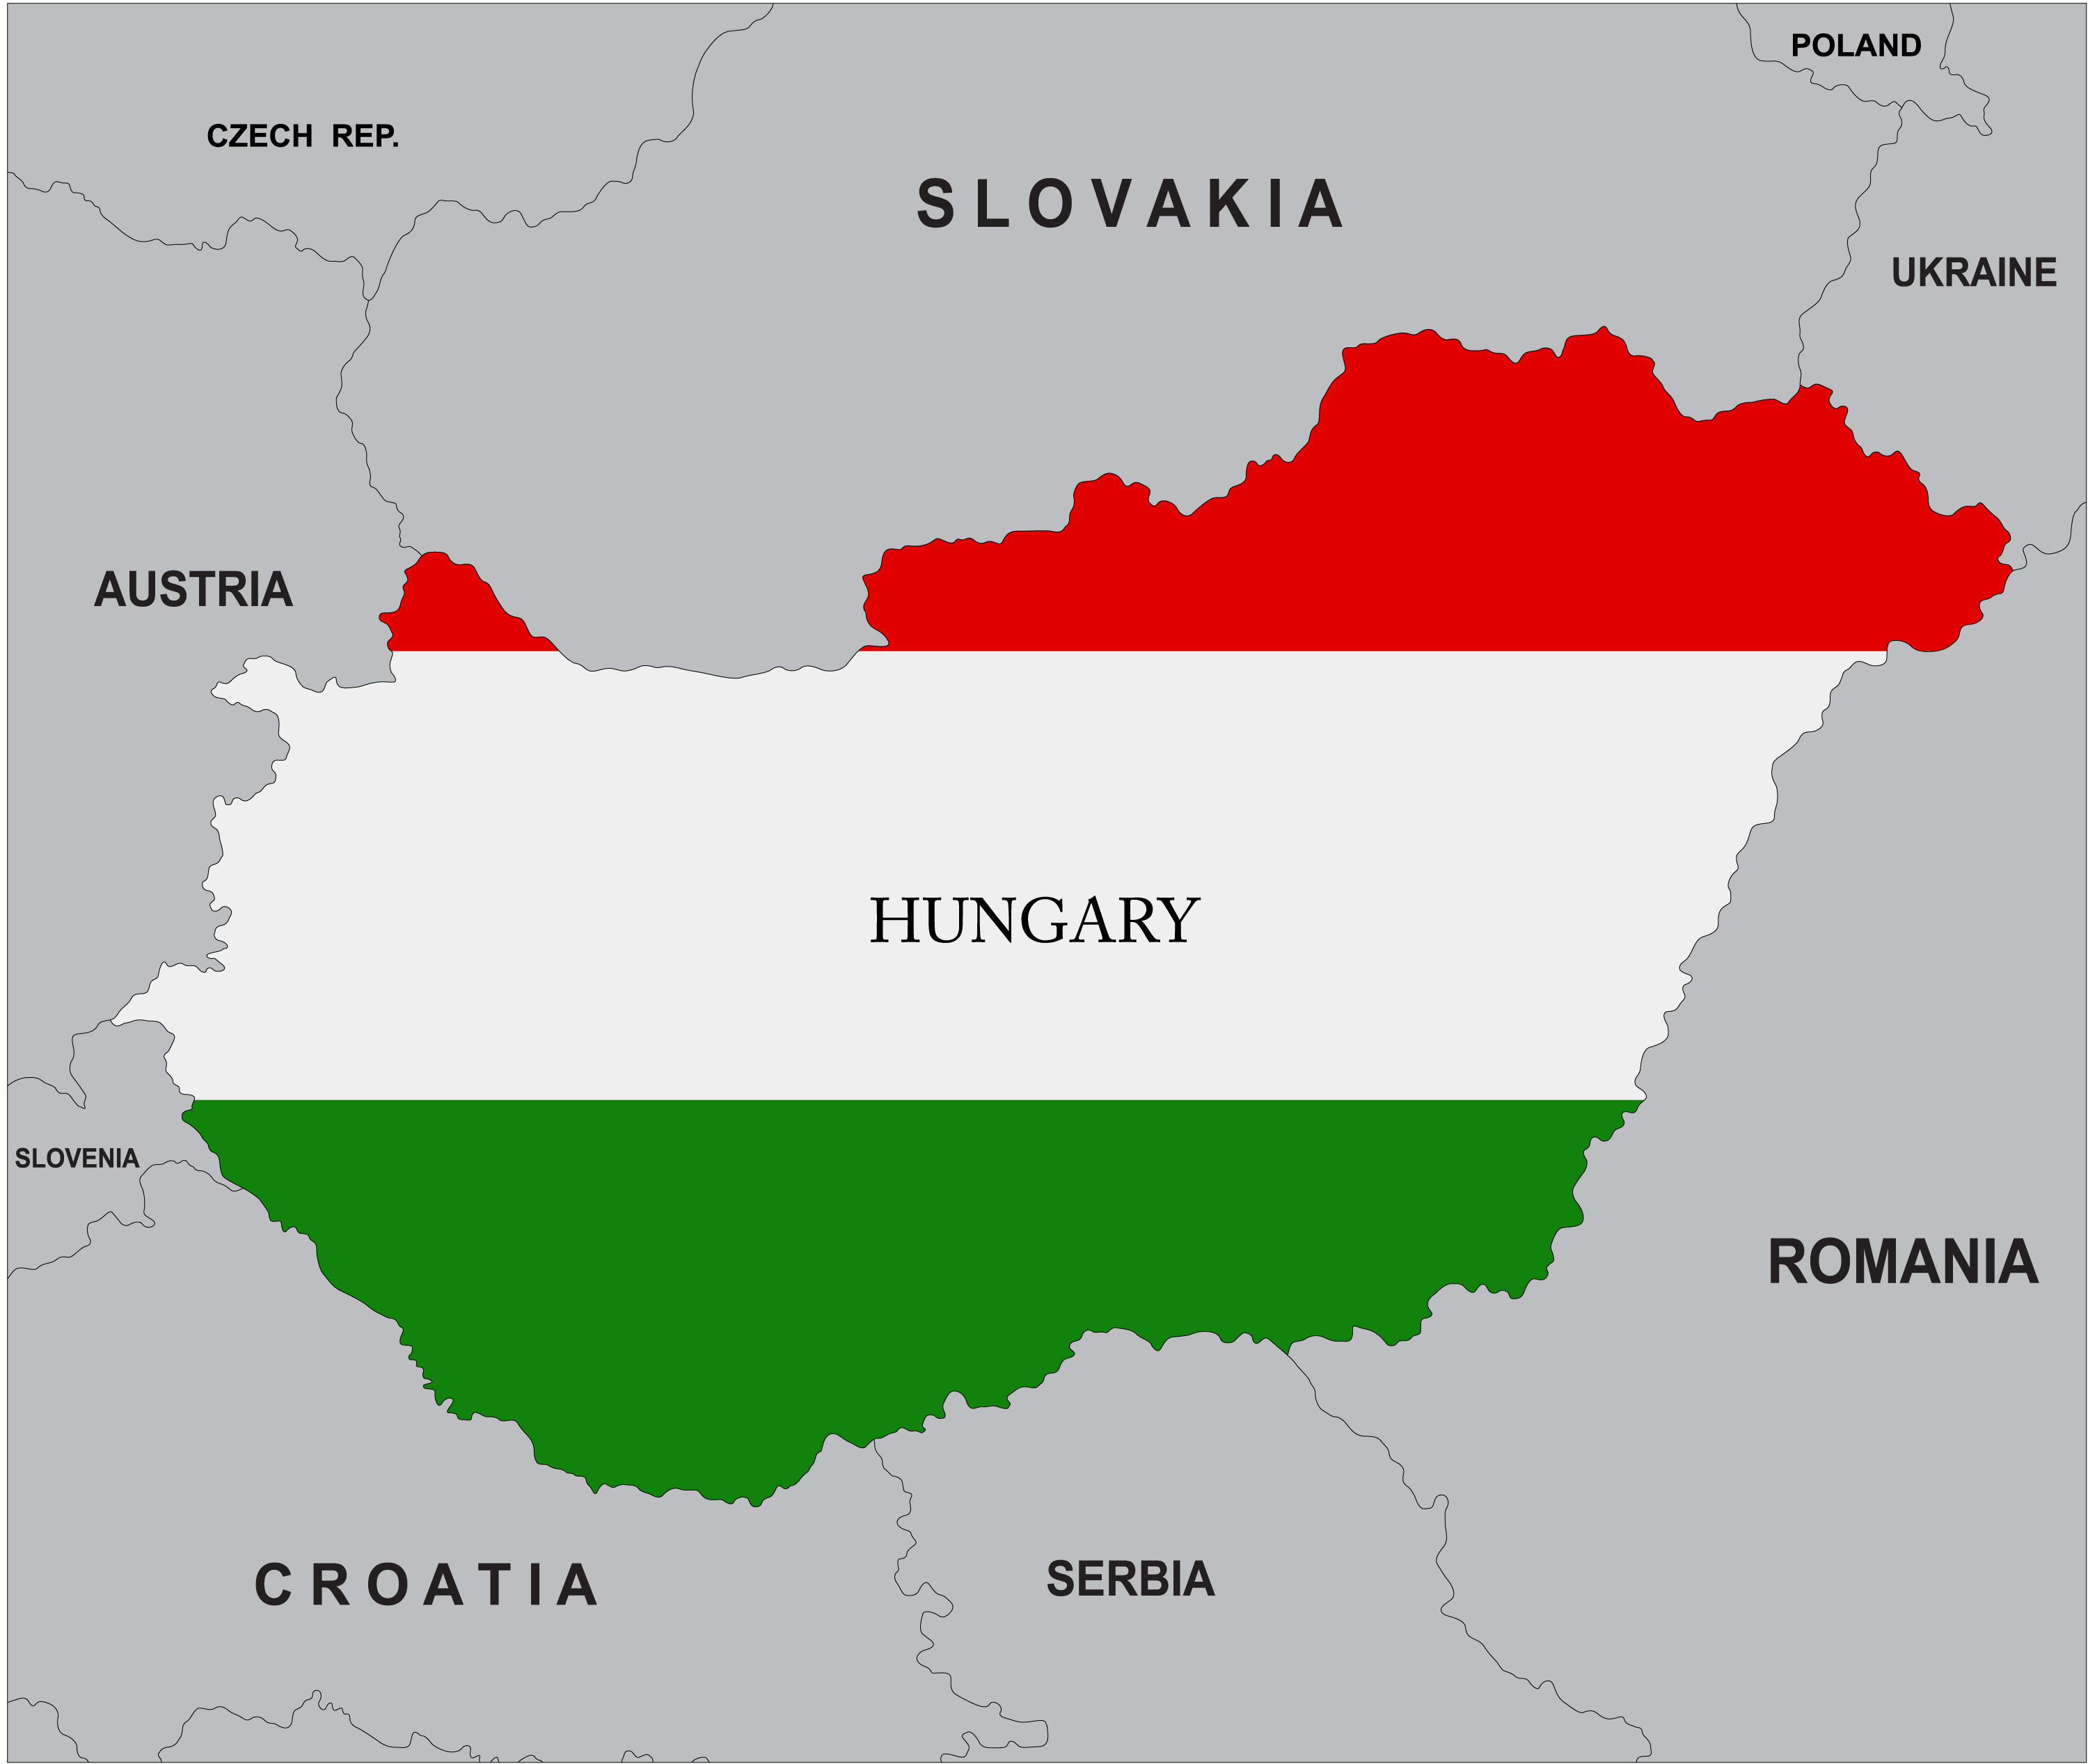 [HUNGARI] TUYỂN CÔNG NHÂN XÂY DỰNG LẤY VISA SCHENGEN DUY NHẤT NGÀY 15/02/2022